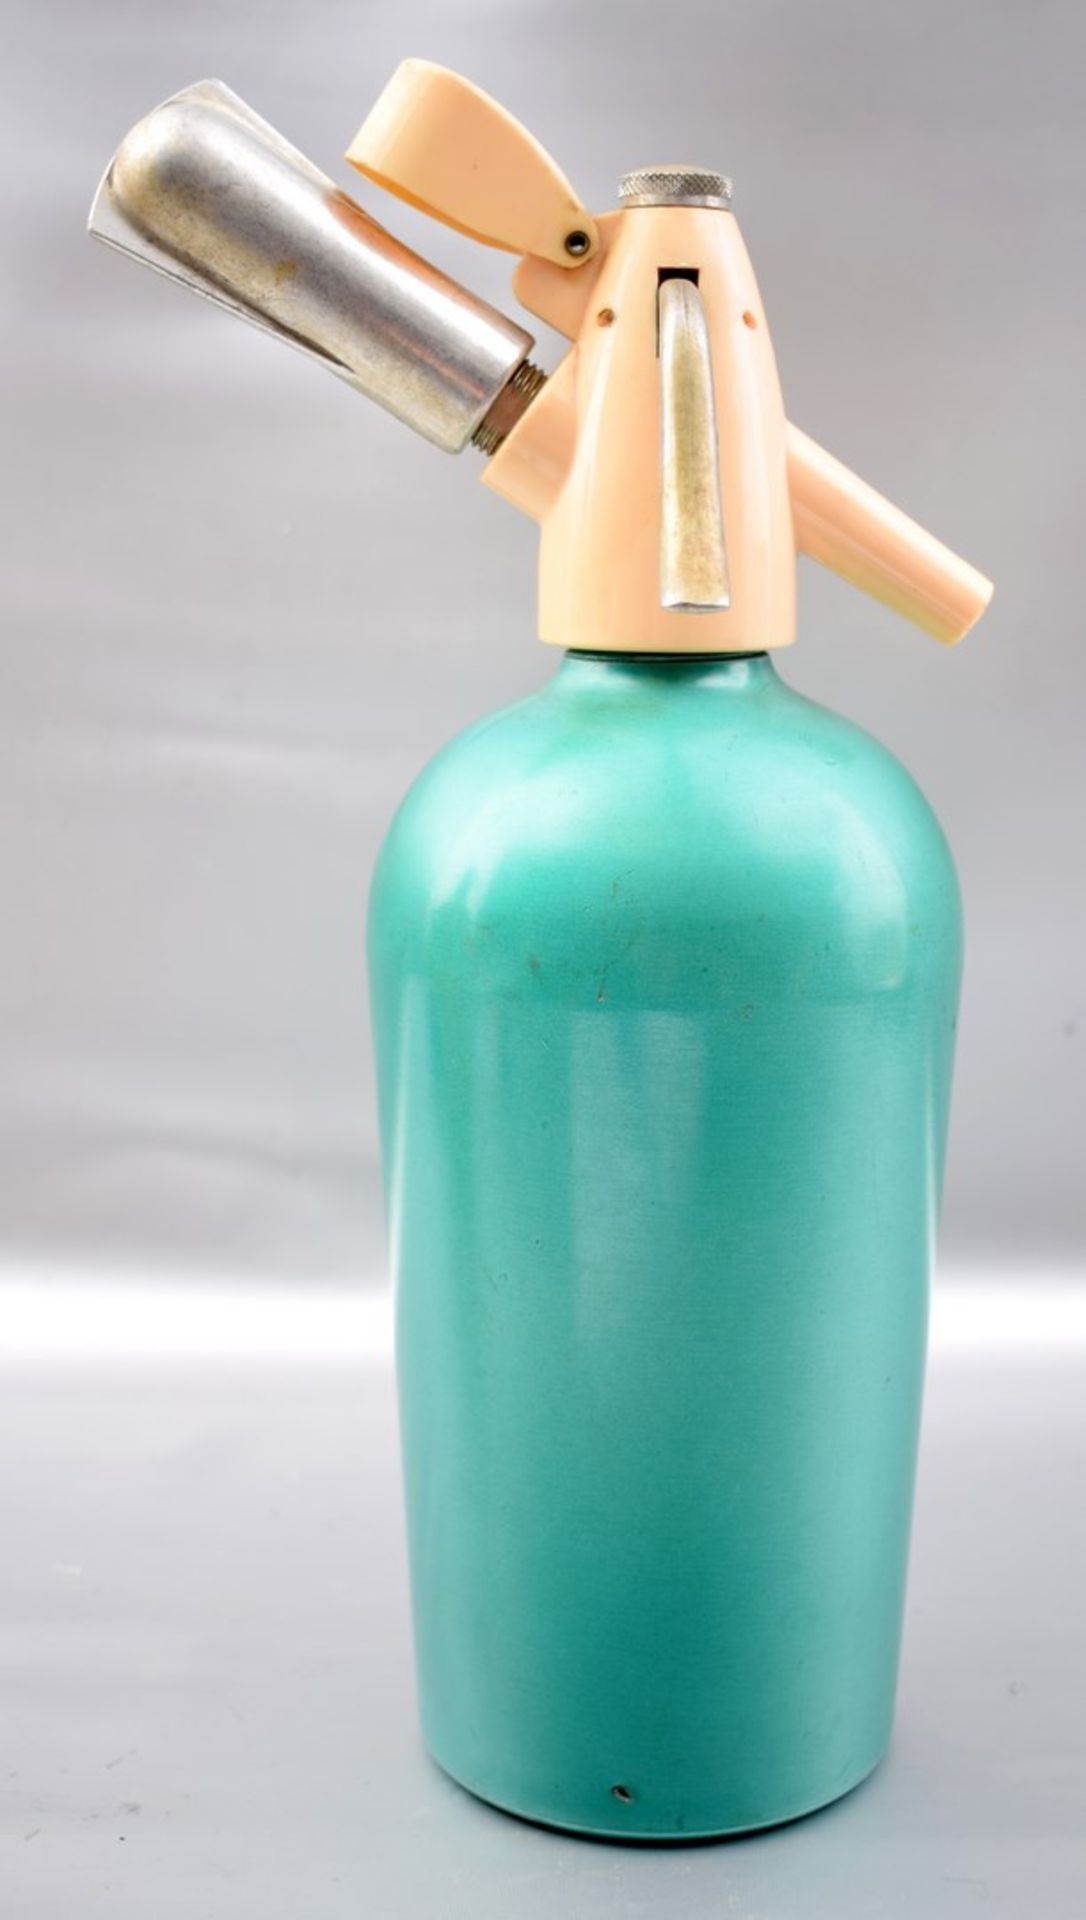 Sodaflasche türkis, H 30 cm, FM Kaiser, Made in Austria, 50er Jahre